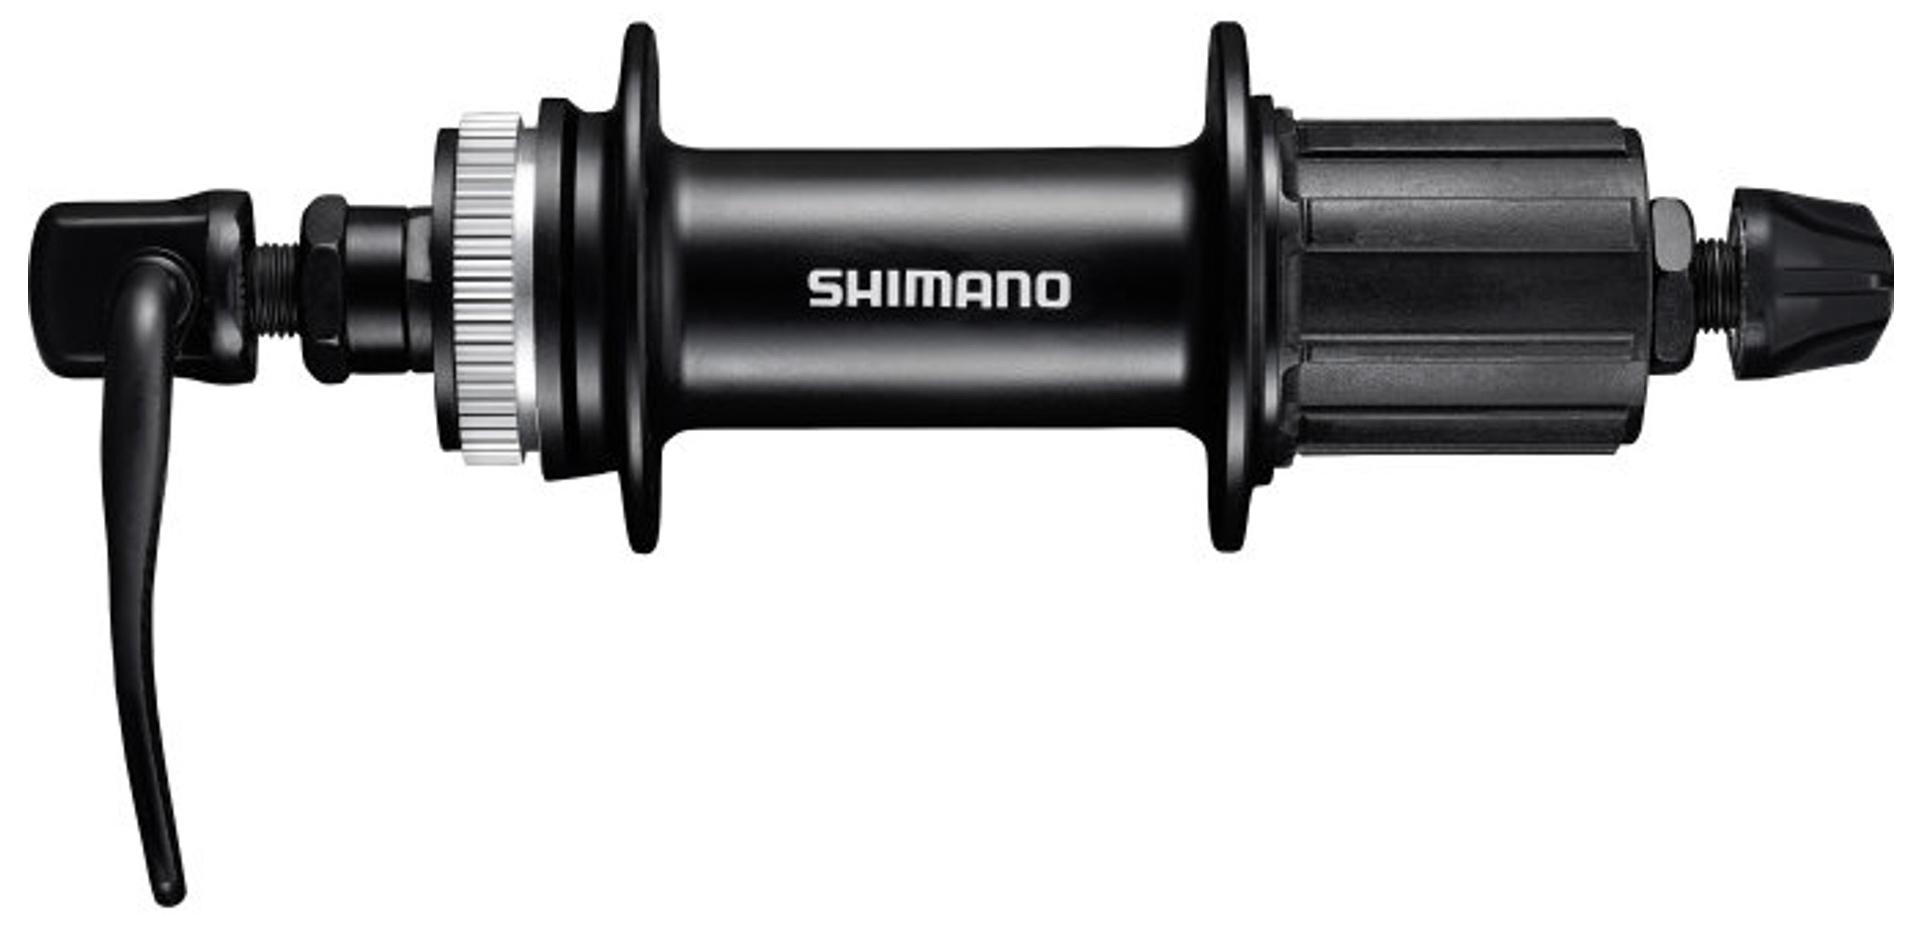  Втулка для велосипеда Shimano MT200-B 8/9/10ск., 32отв. (EFHMT200BB41B)